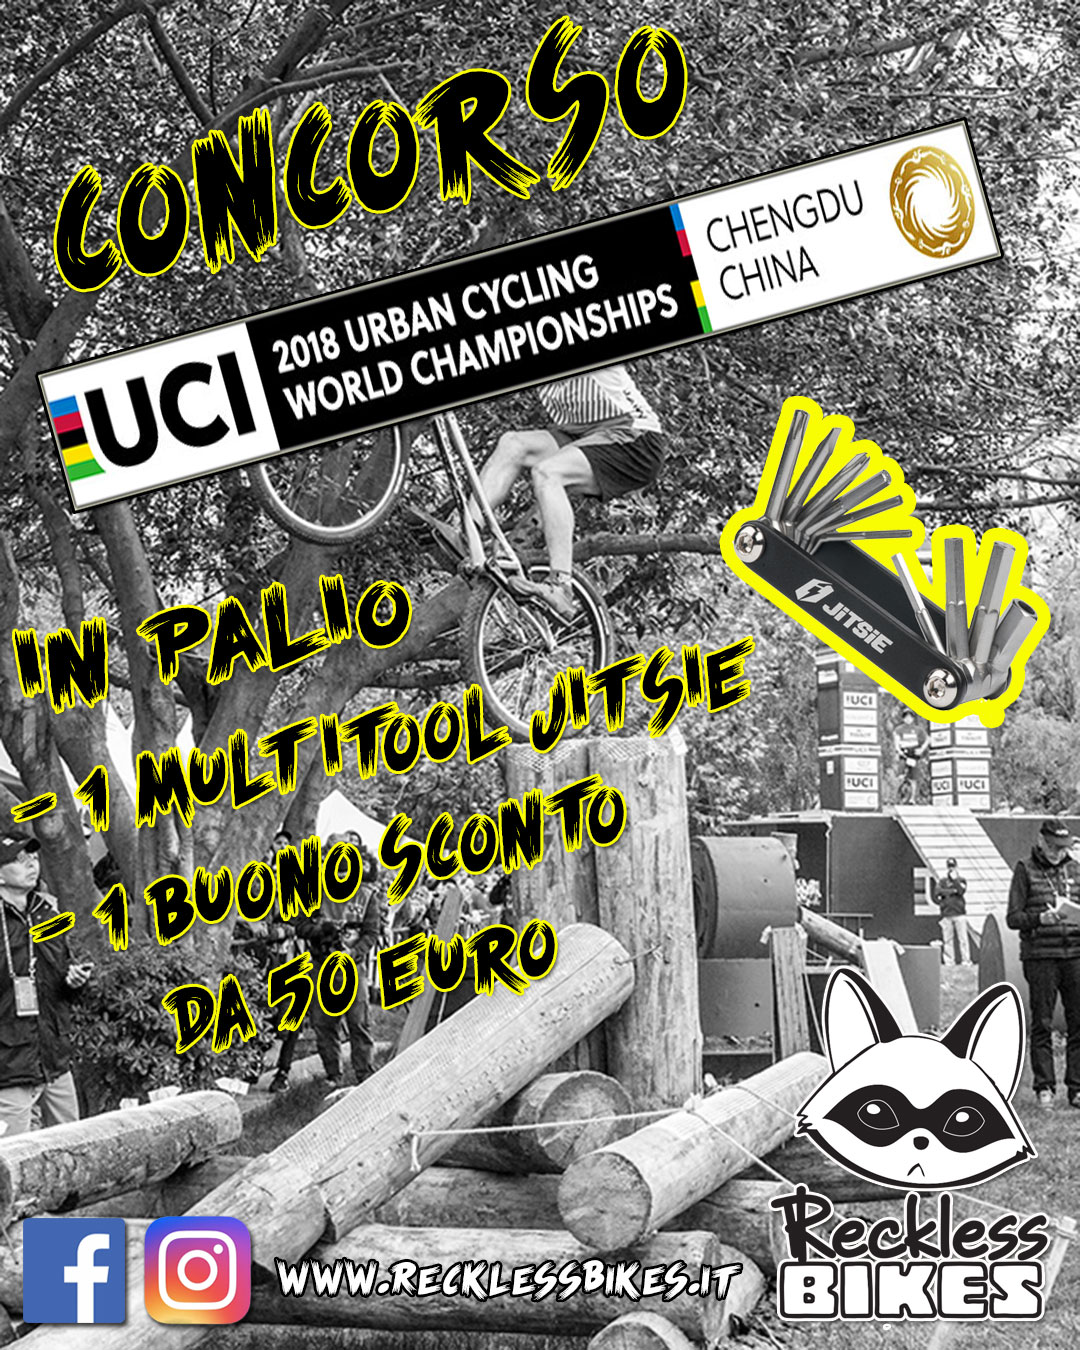 CONCORSO UCI WORLD CHAMPIONSHIP 2018